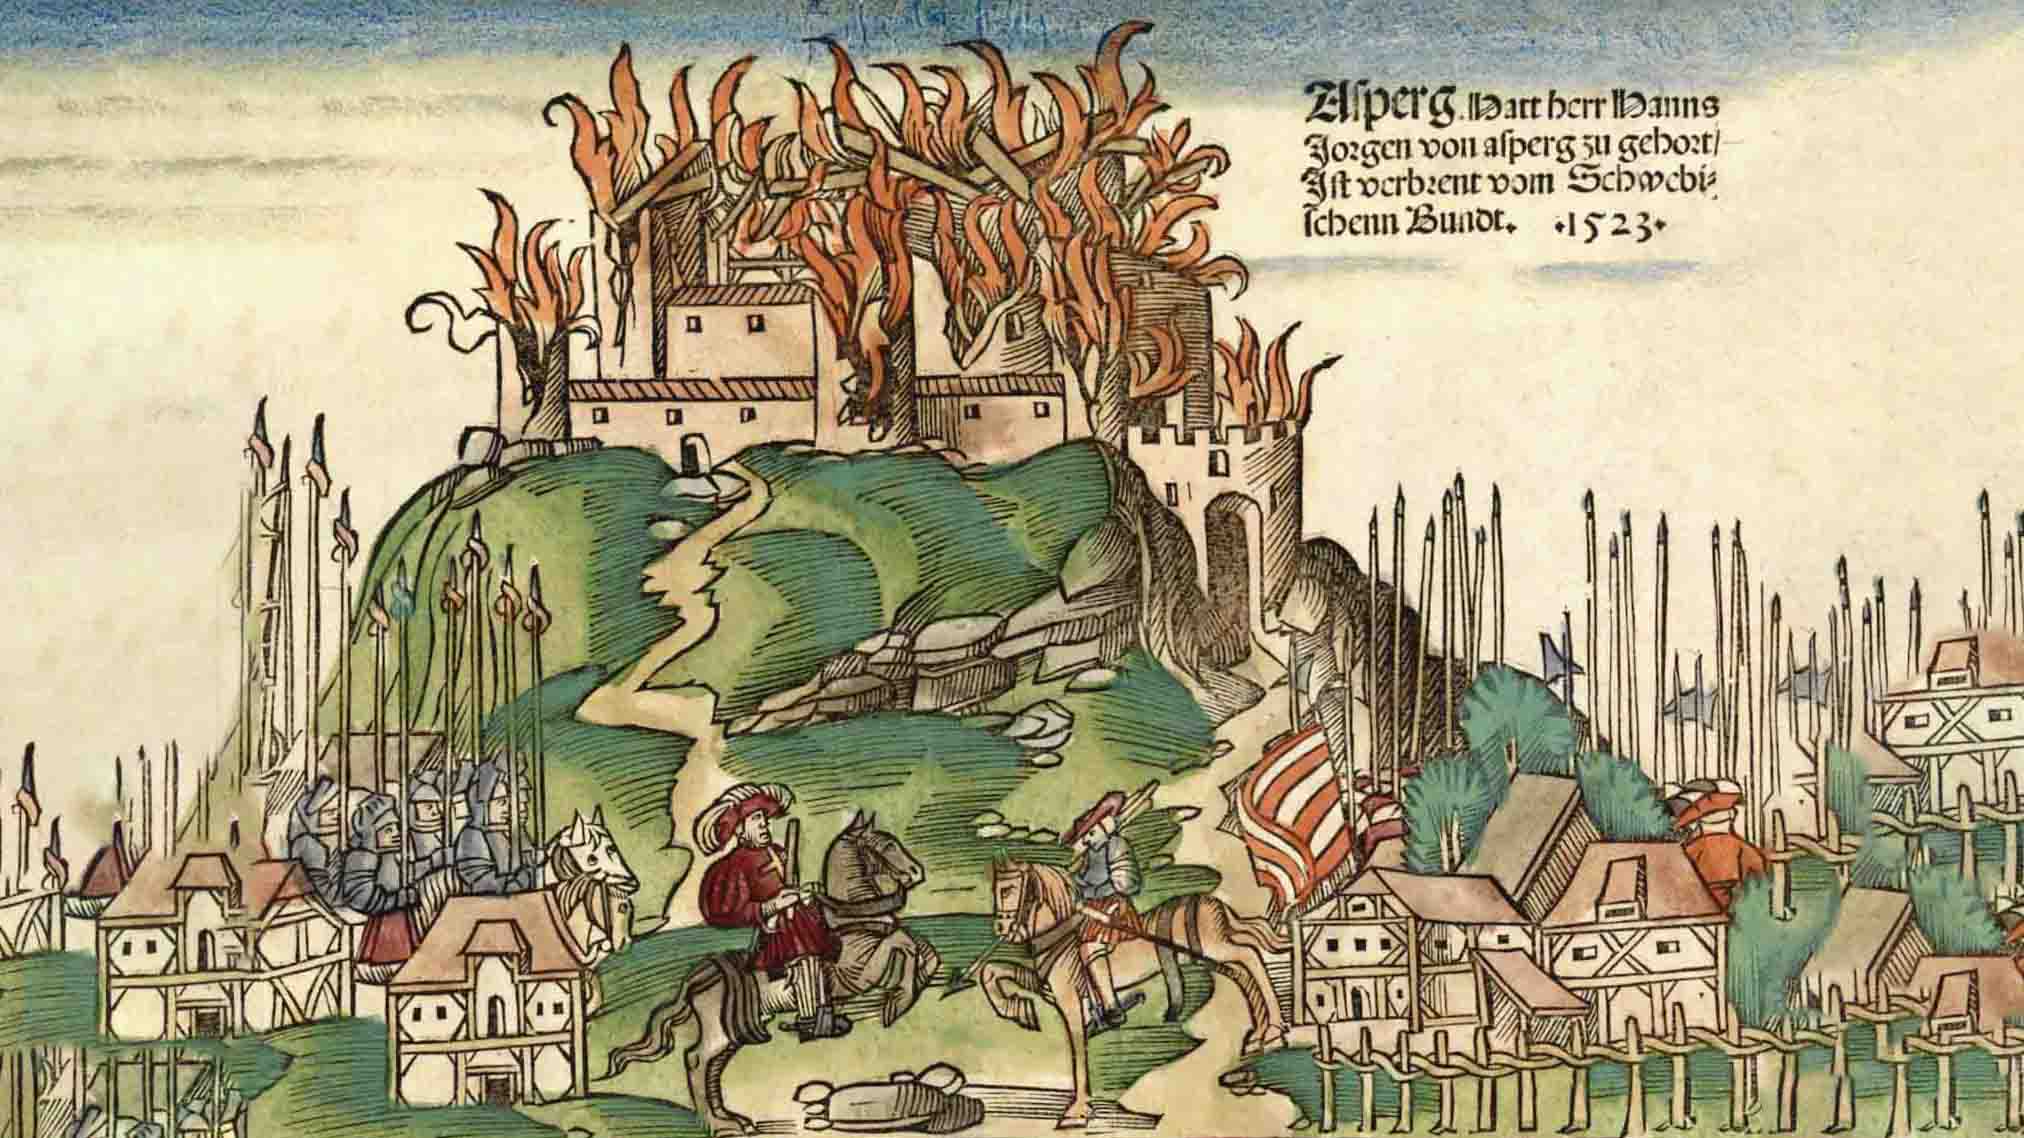 Vorschaubild zur Datenbank zu Mittelalterlichen Burgen in Franken (Holzschnitt der Burg Absberg von 1523)